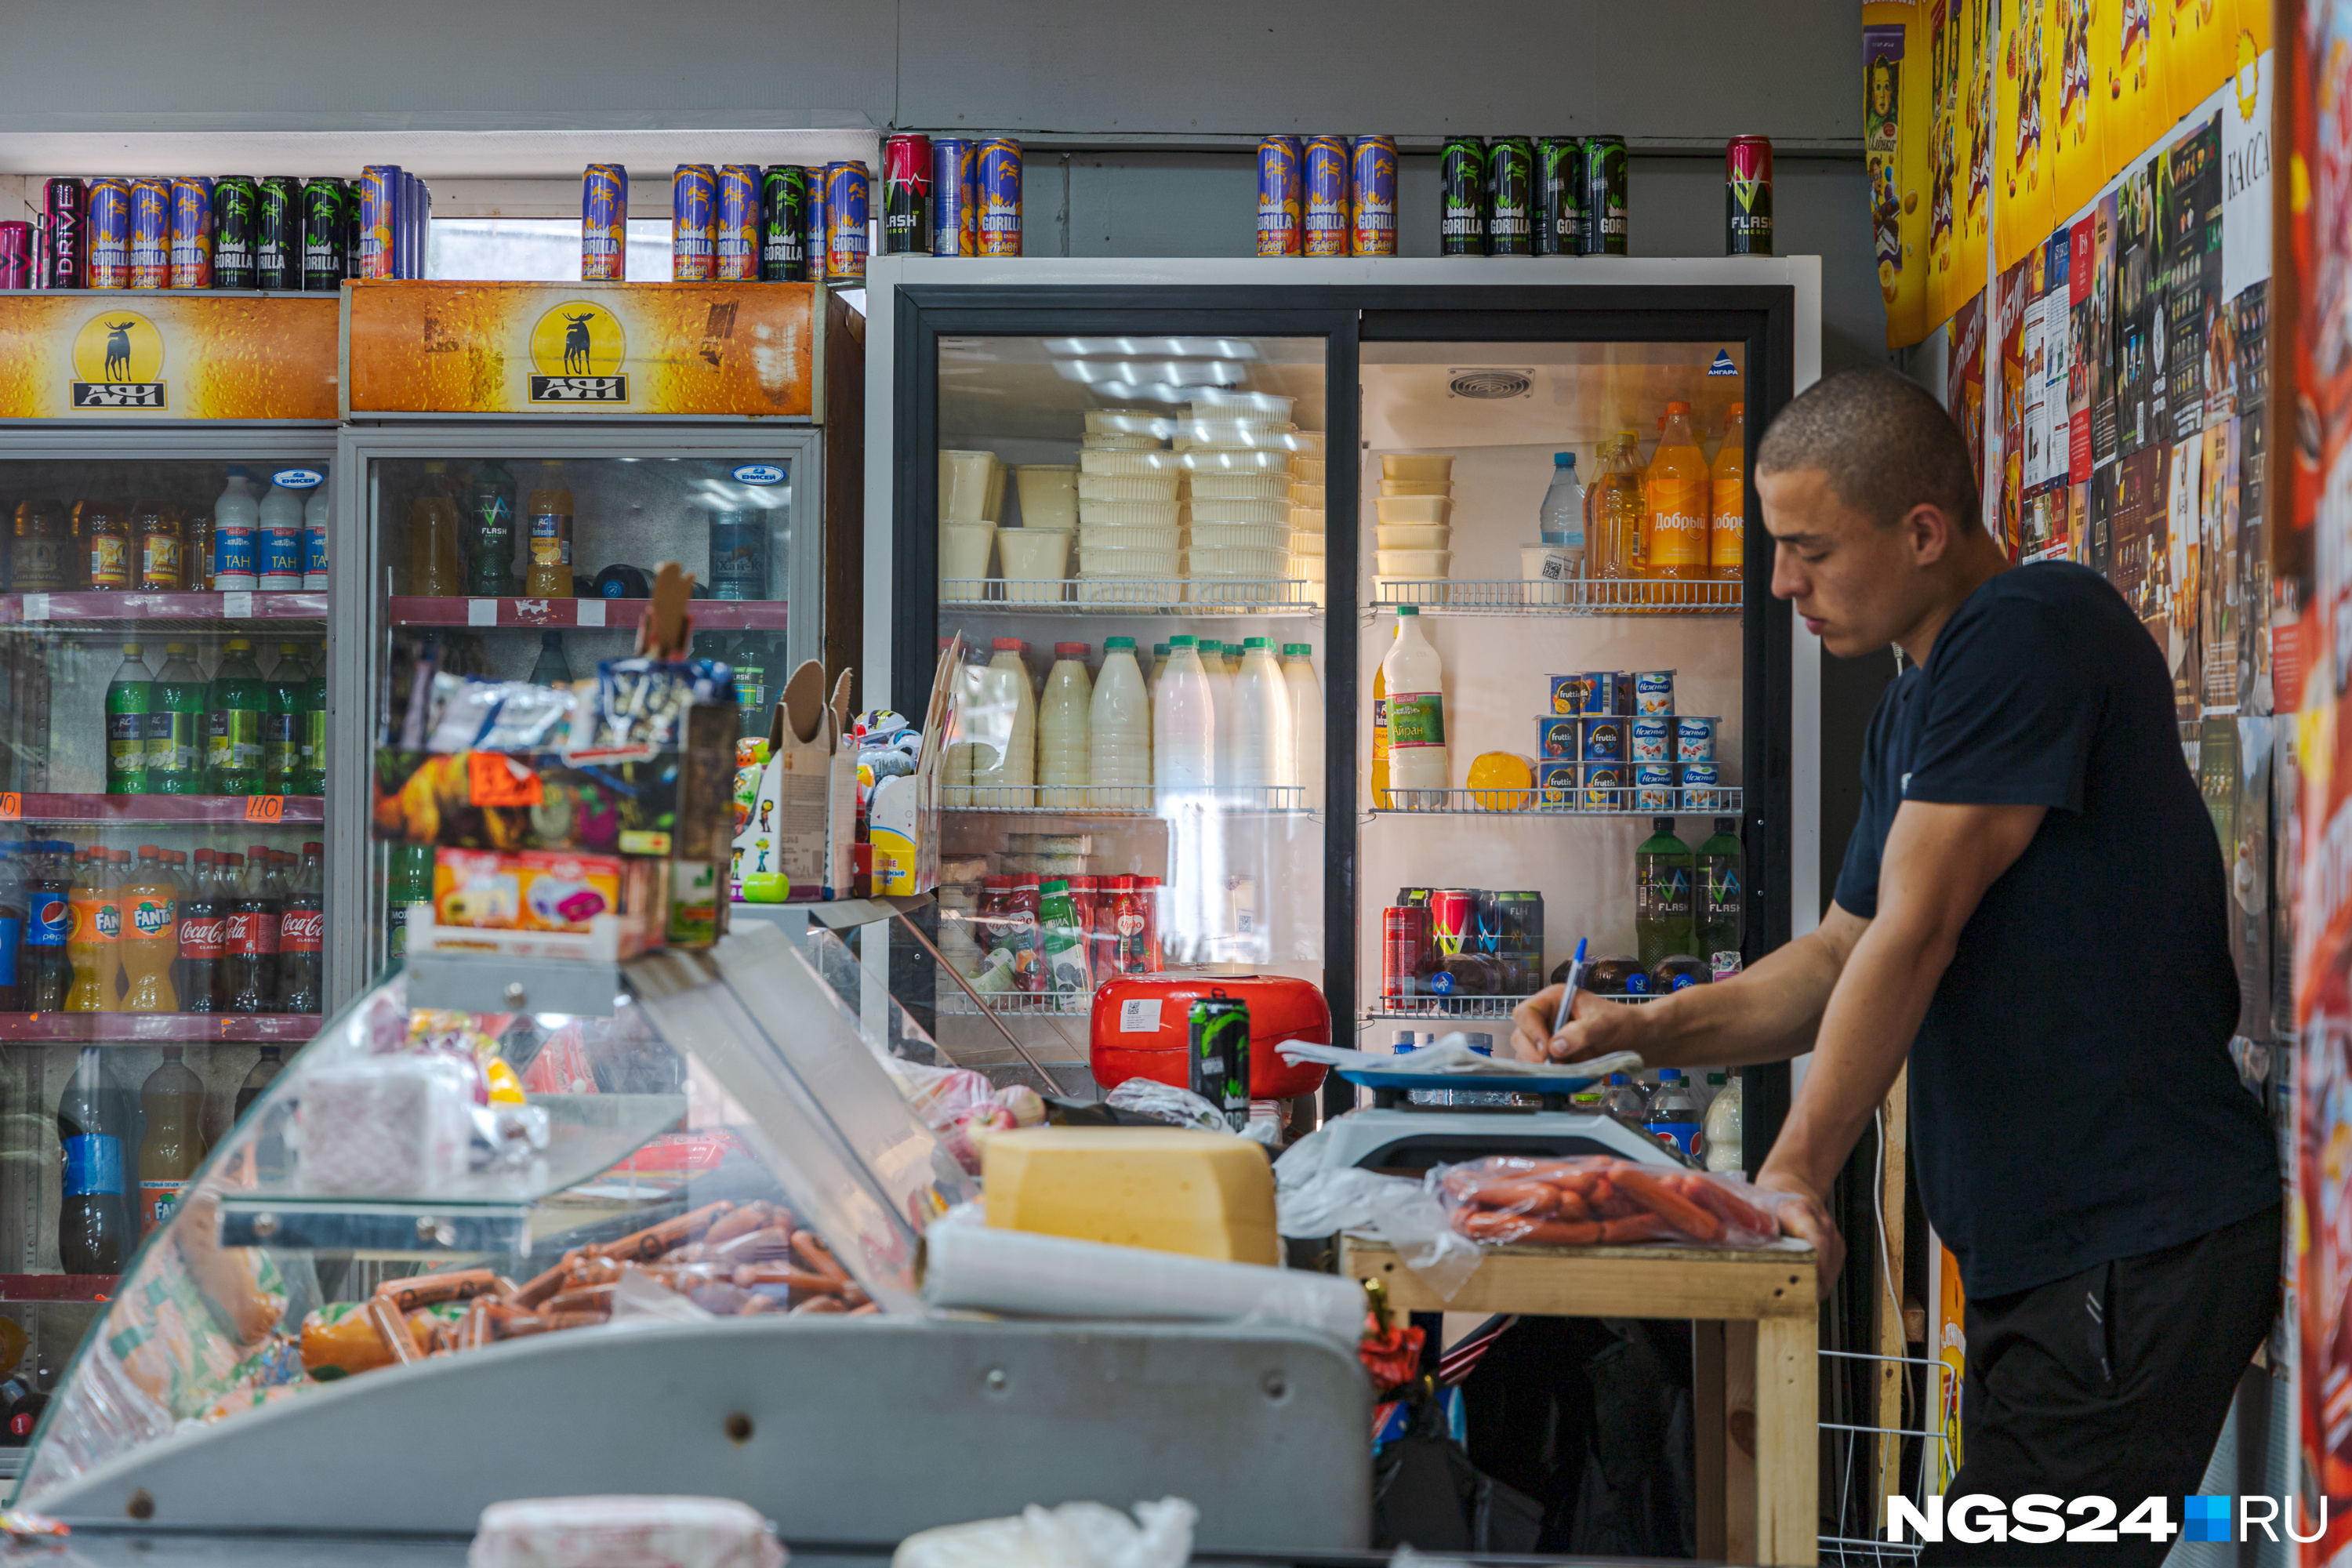 В Красноярском крае продавщица не продала вареники из-за вражды с покупательницей. Так можно было?